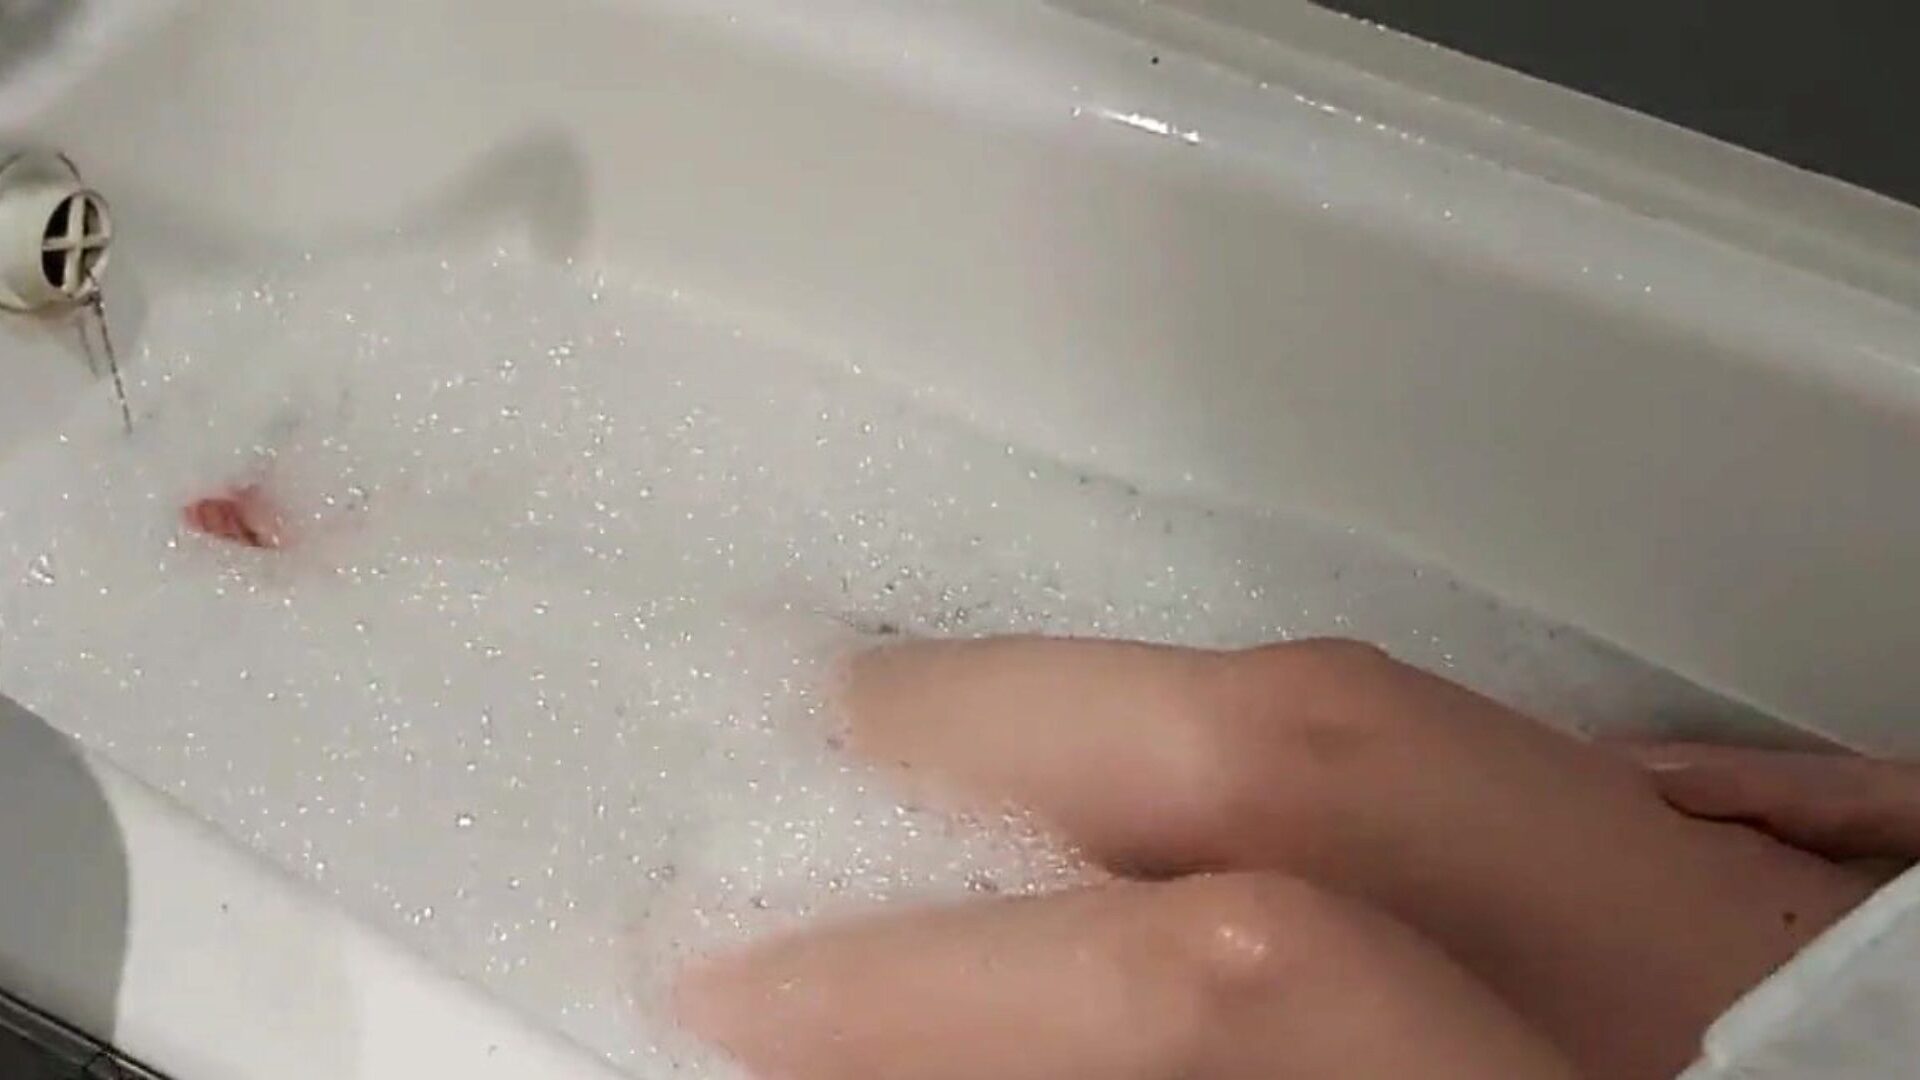 dziewczyna namiętnie myje ciało i masturbuje cipkę ... oglądaj, jak dziewczyna namiętnie myje ciało i masturbuje cipkę - odcinek amatorski na xhamster - ostateczna kolekcja darmowych filmów porno w jakości domowej roboty i masturbacji HD